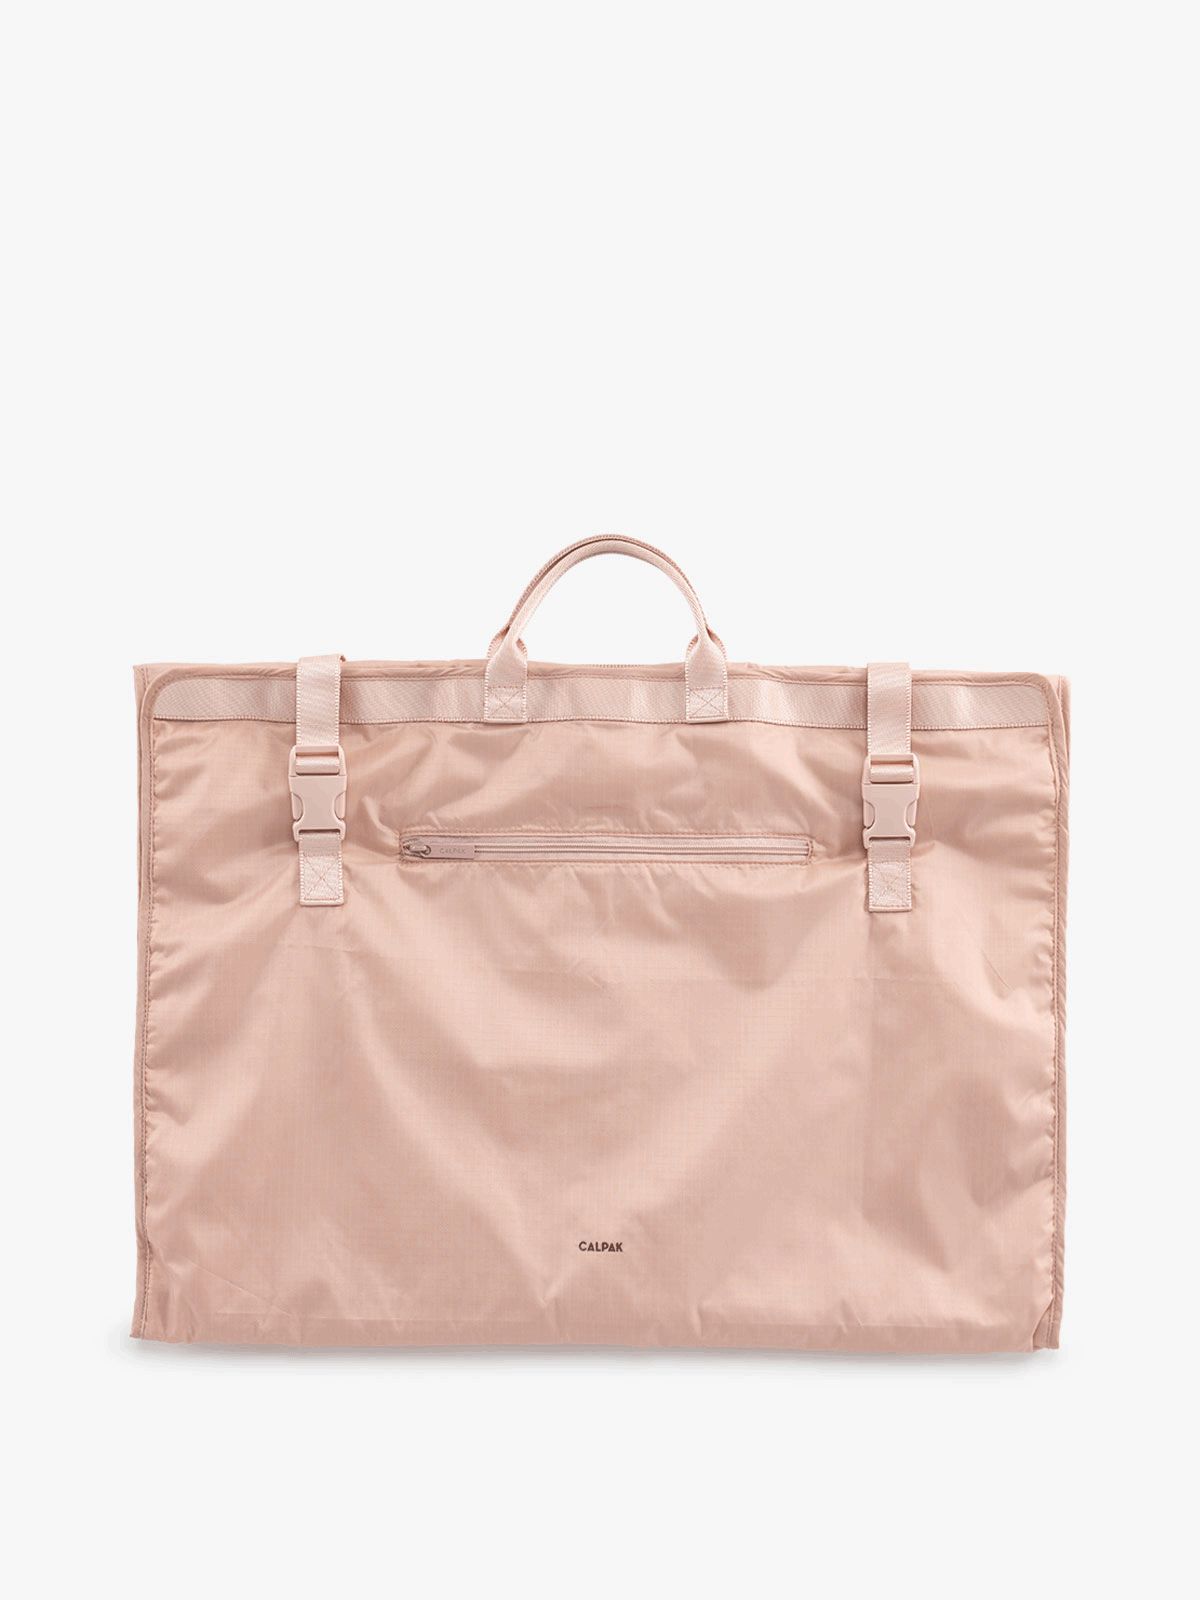 Packable Large Garment Bag in Mauve | CALPAK | CALPAK Travel